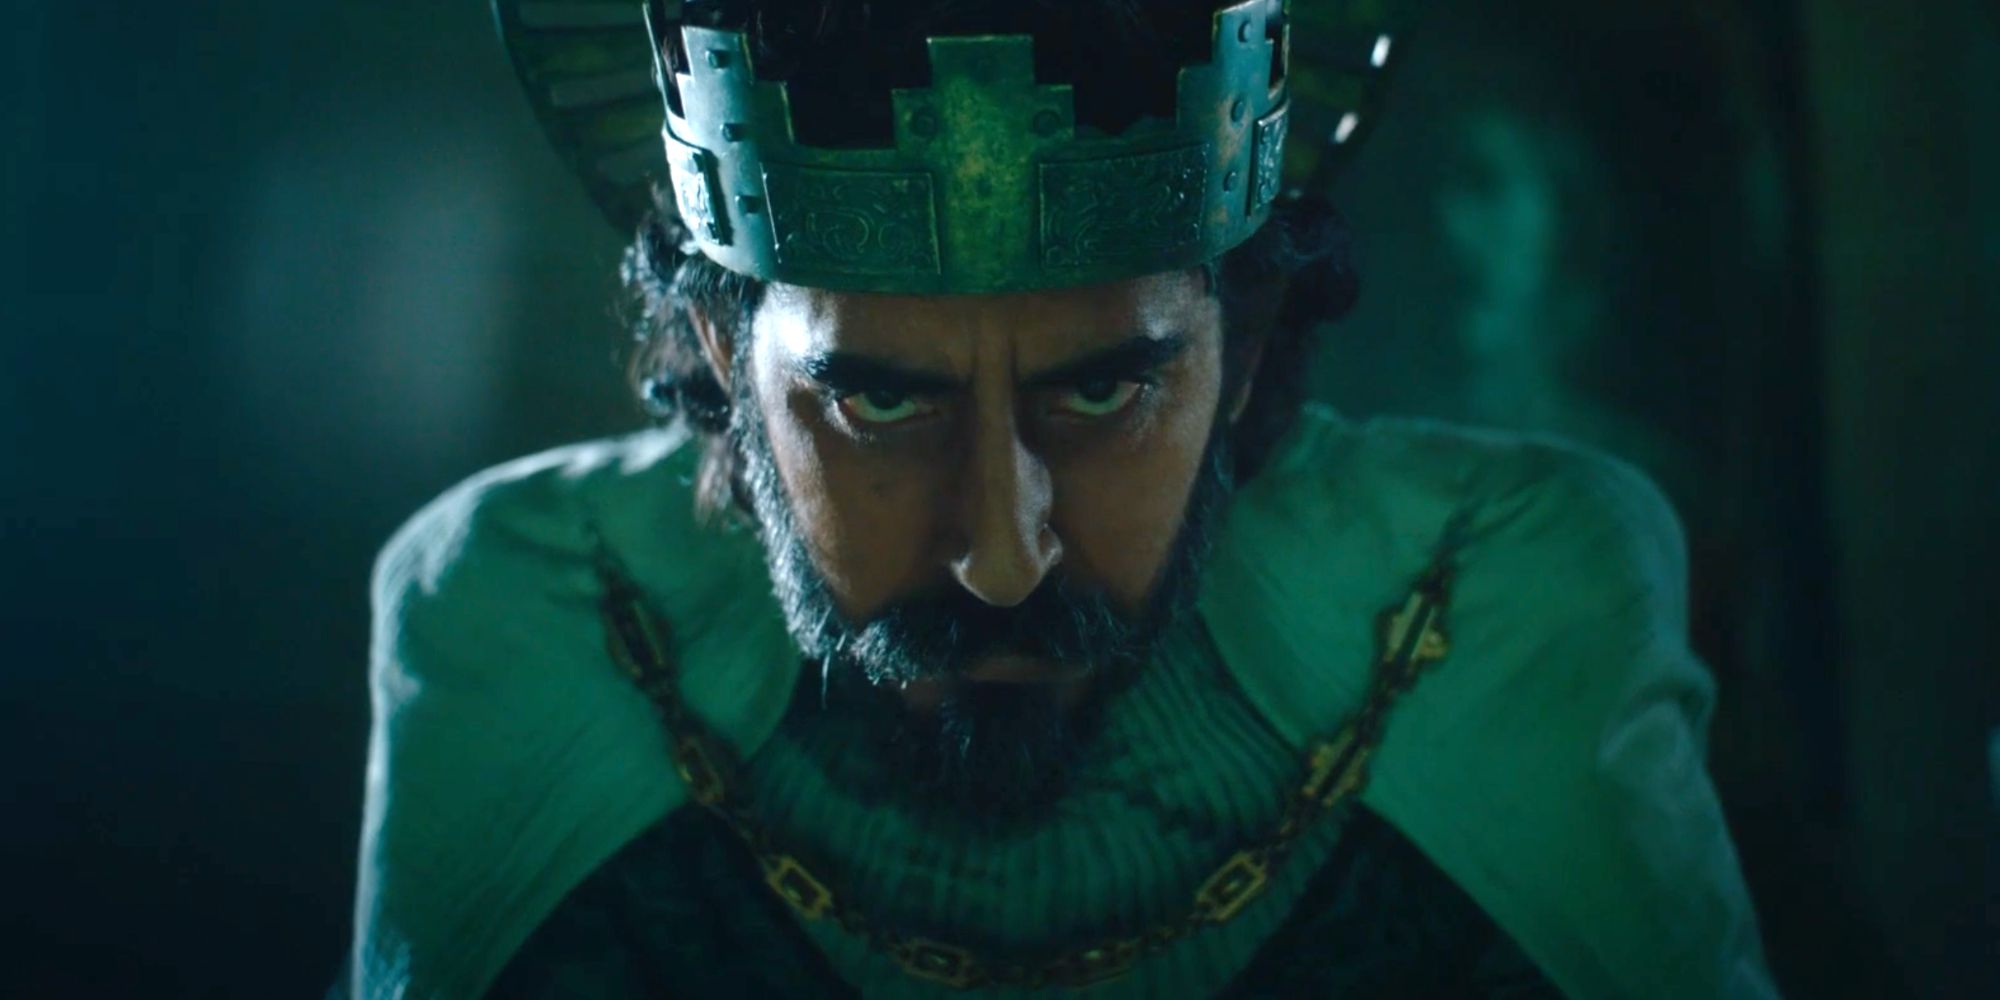 Patel as Gawain wearing a crown